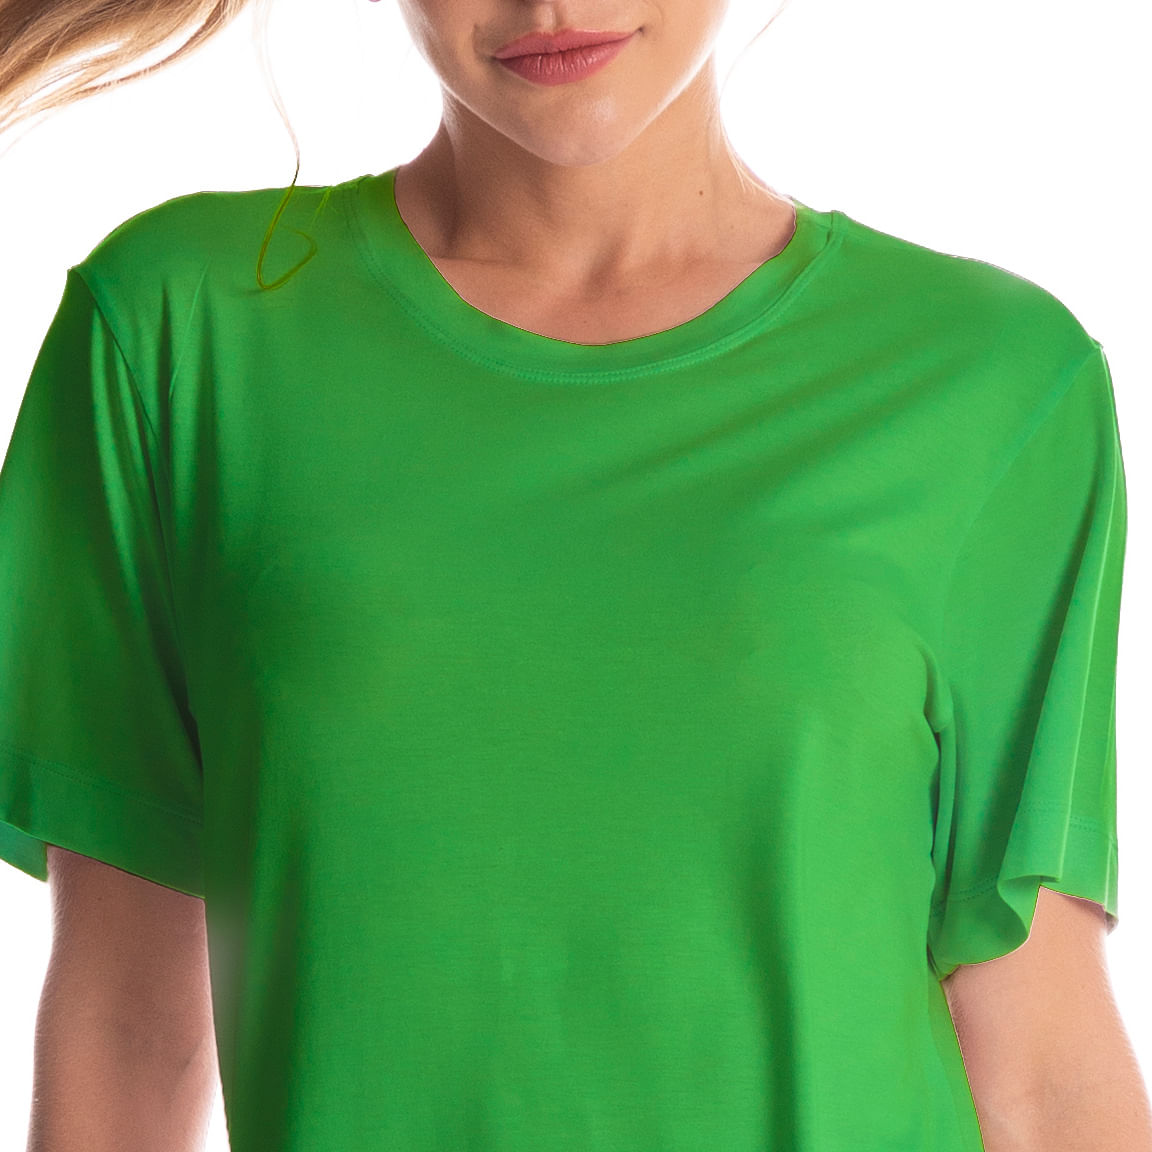 Camiseta-Feminina-Manga-Curta-Essential-Vivame-Verde-Daniela-Tombini